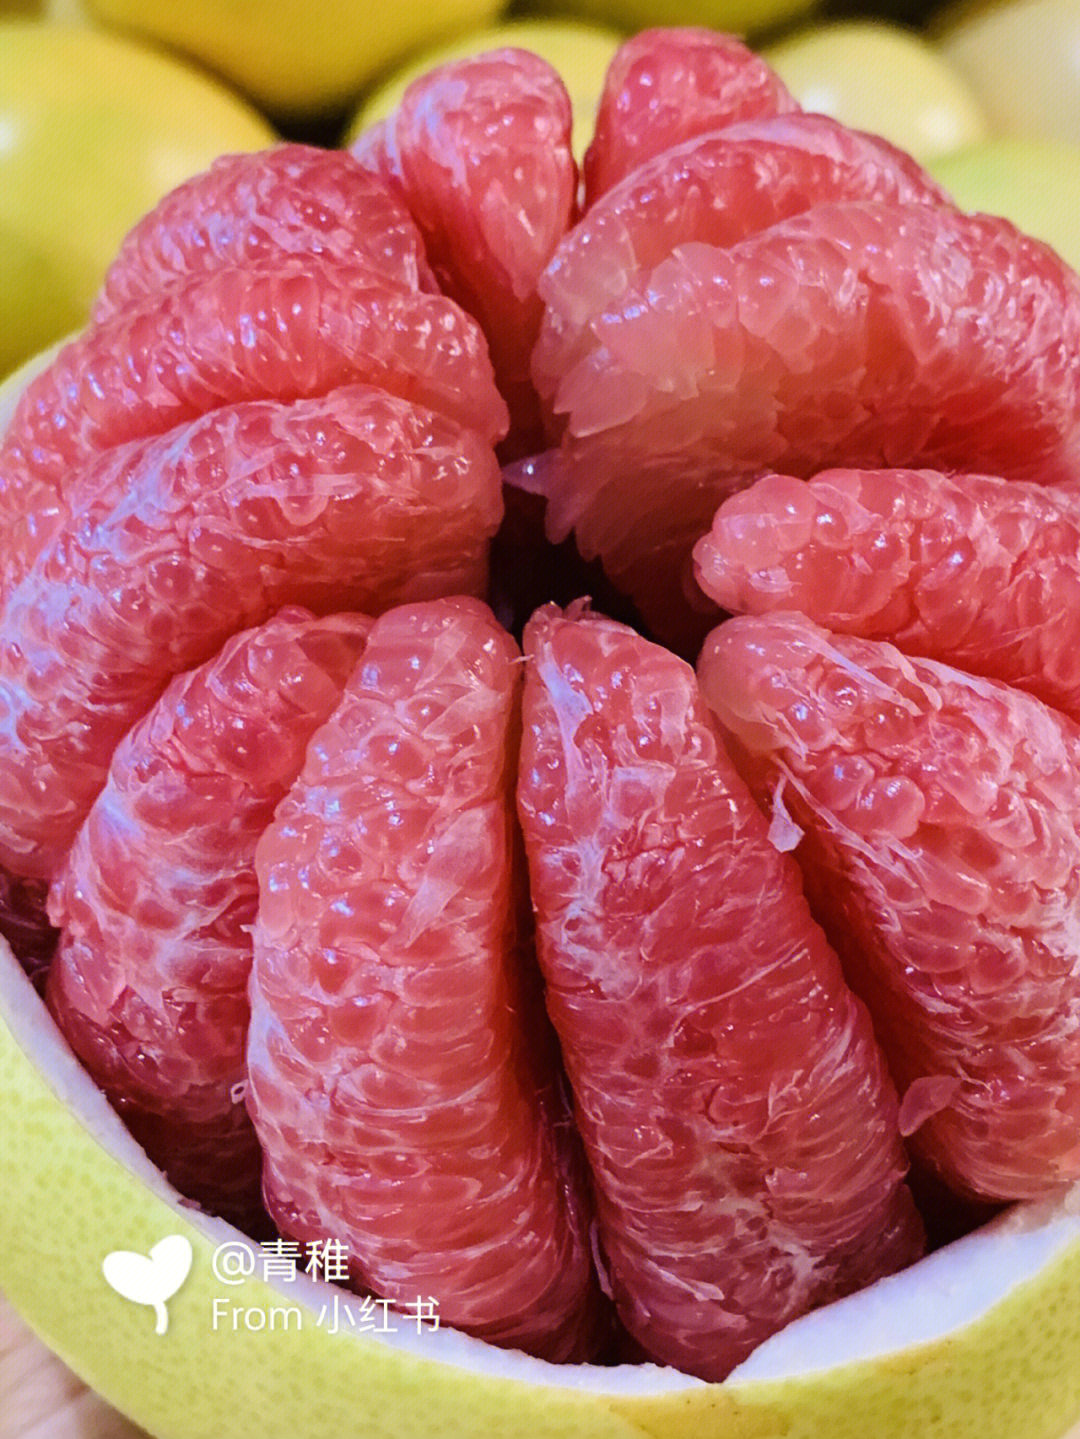 所谓三红蜜柚即果皮淡红,瓤红,肉红,是从红柚芽变单株中选出的一个